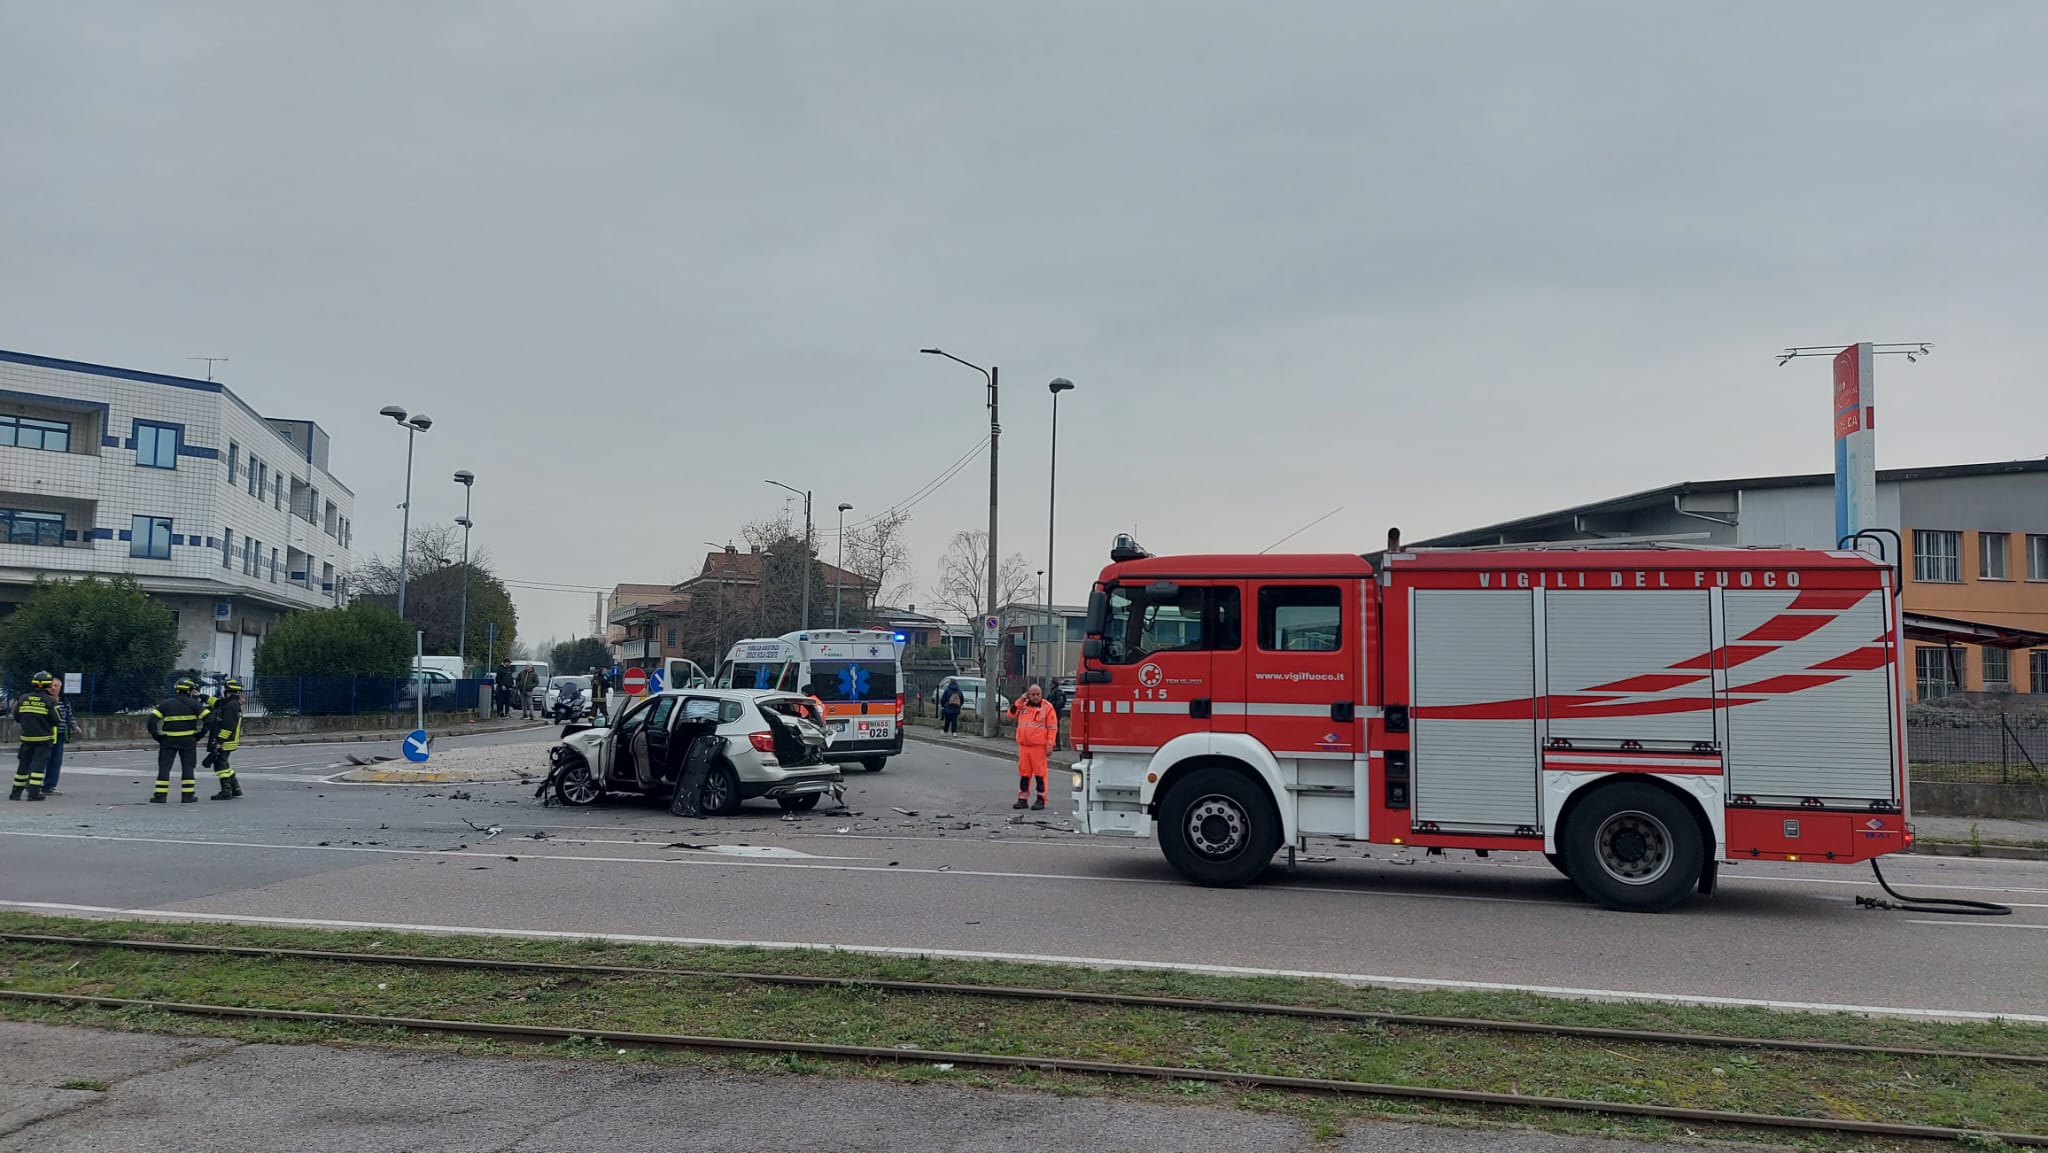 Sirene di notte: ambulanze impegnate a soccorrere chi beve troppo - Prima  Monza